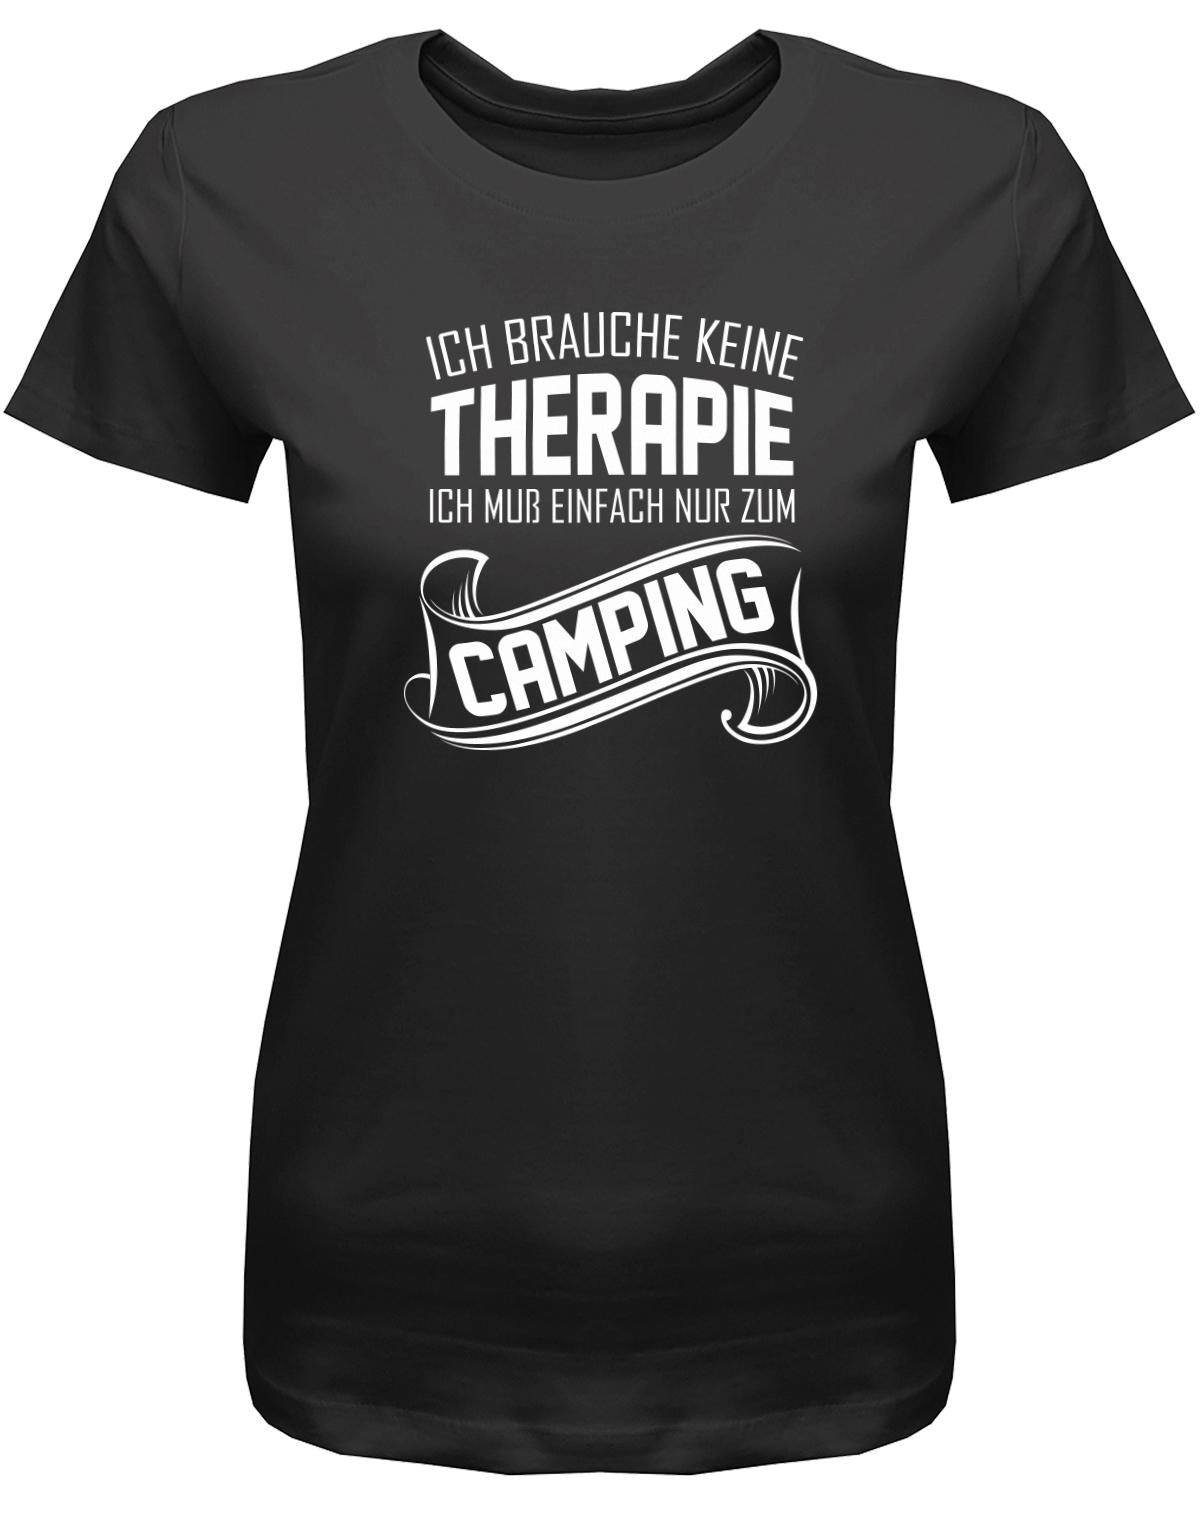 Ich-brauche-keine-Therapie-ich-muss-einfach-nur-zum-camping-Damen-Camper-Shirt-scjhwarz